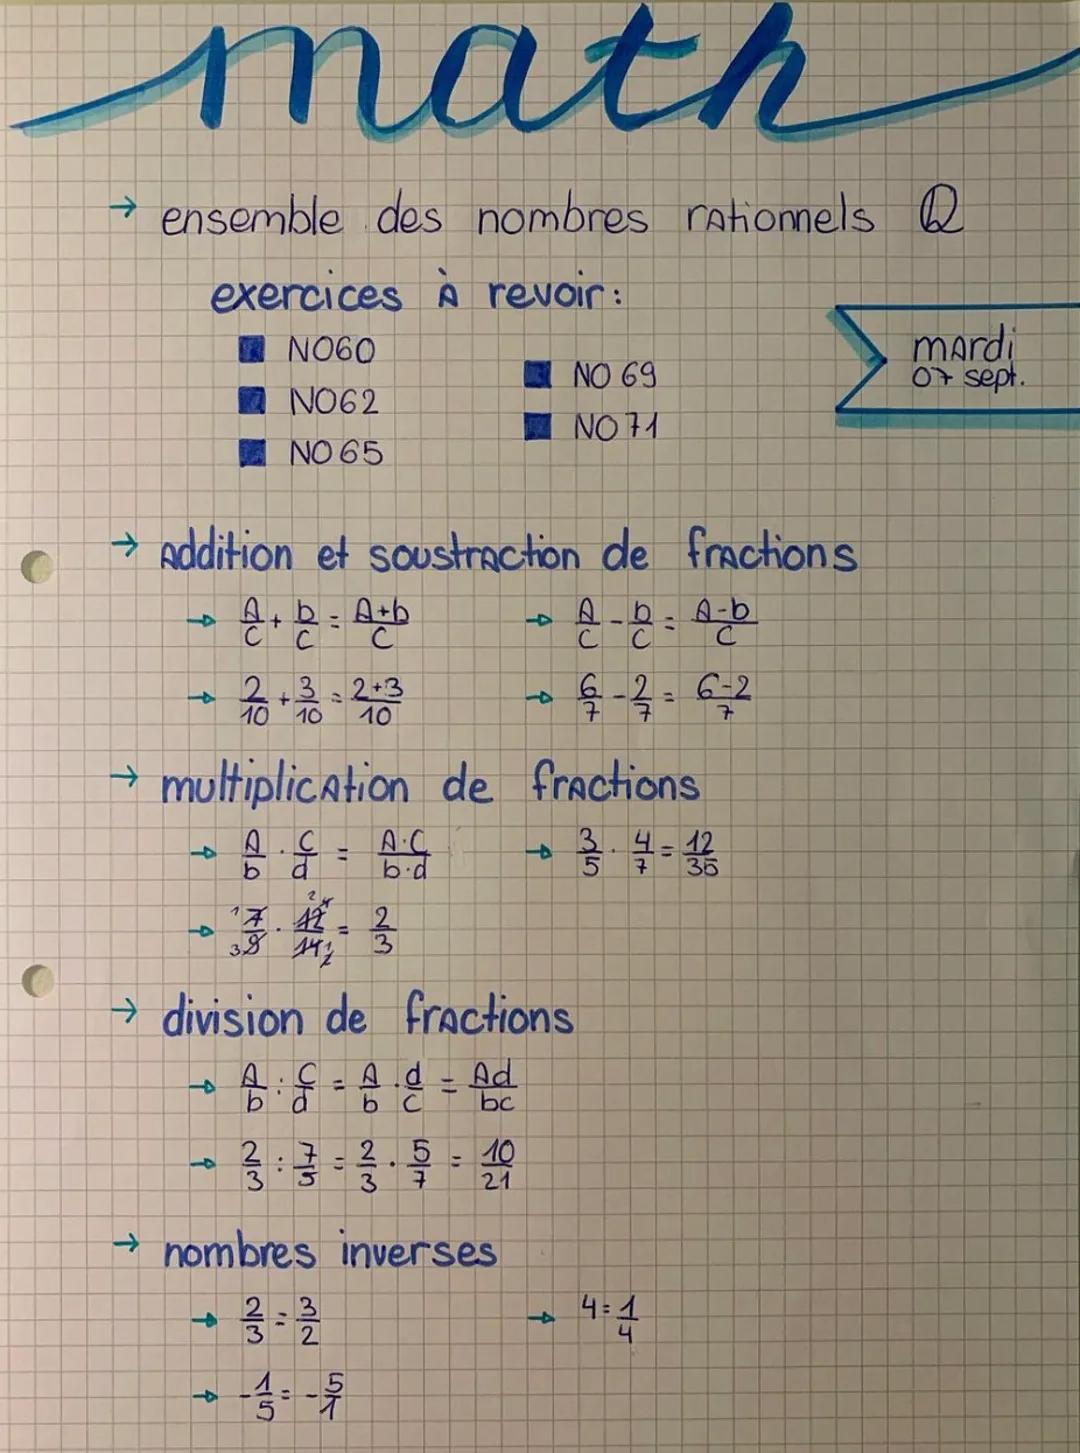 C
math
→ ensemble des nombres rationnels Q
exercices À revoir:
N060
NO62
NO 65
→ Addition et soustraction de fractions
A+b=A+b
с
с
4
4
C
2.3